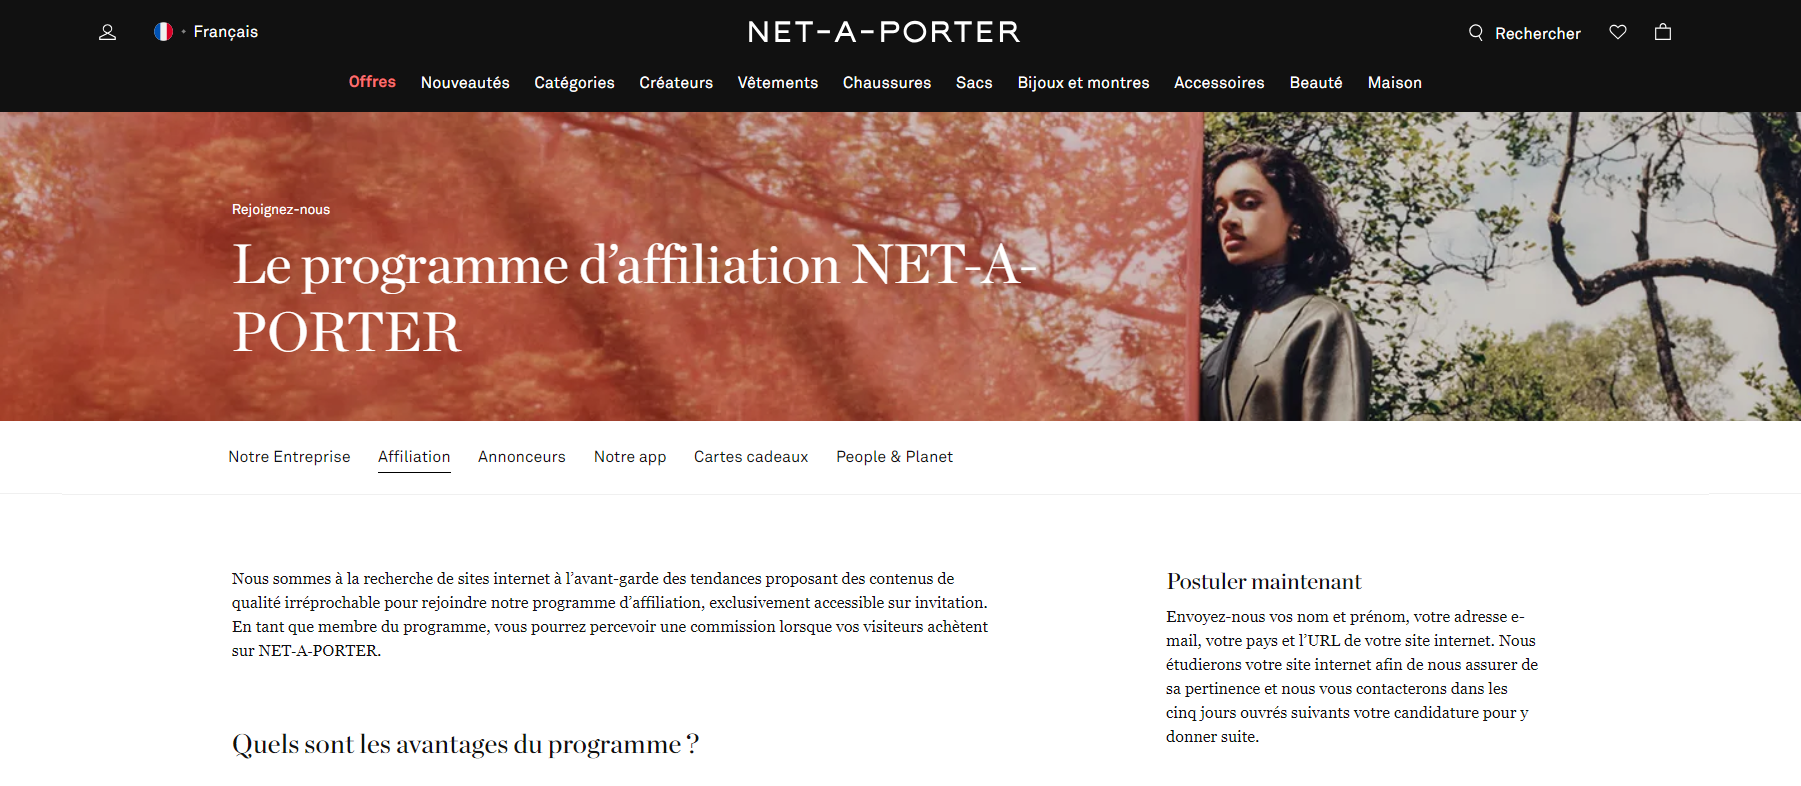 NET-A-PORTER programme d'affiliation